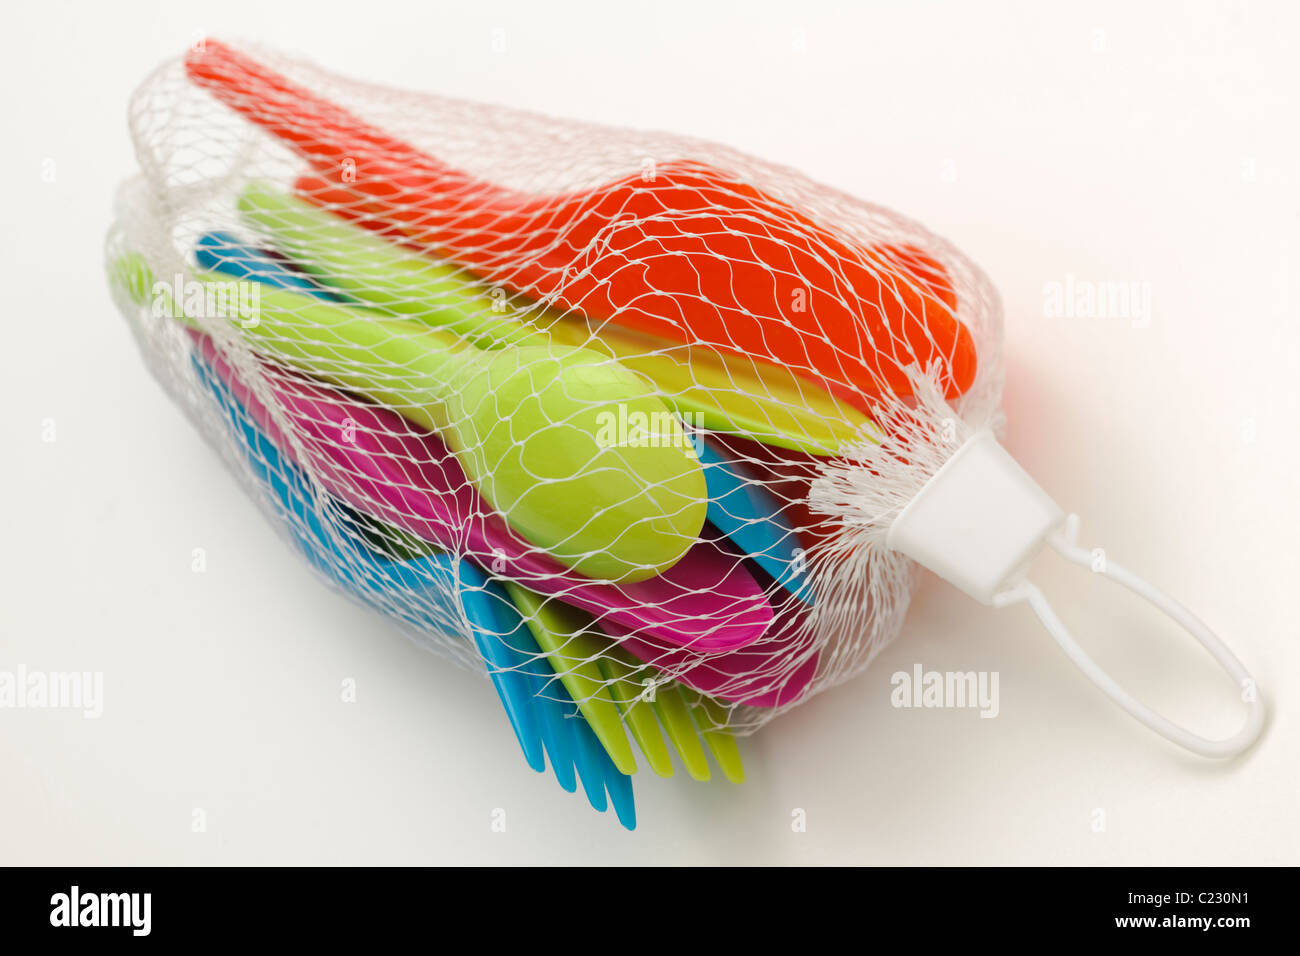 Conjunto de cuchillas de picnic de plástico de colores brillantes horquillas y cucharas en una bolsa de malla blanca Foto de stock